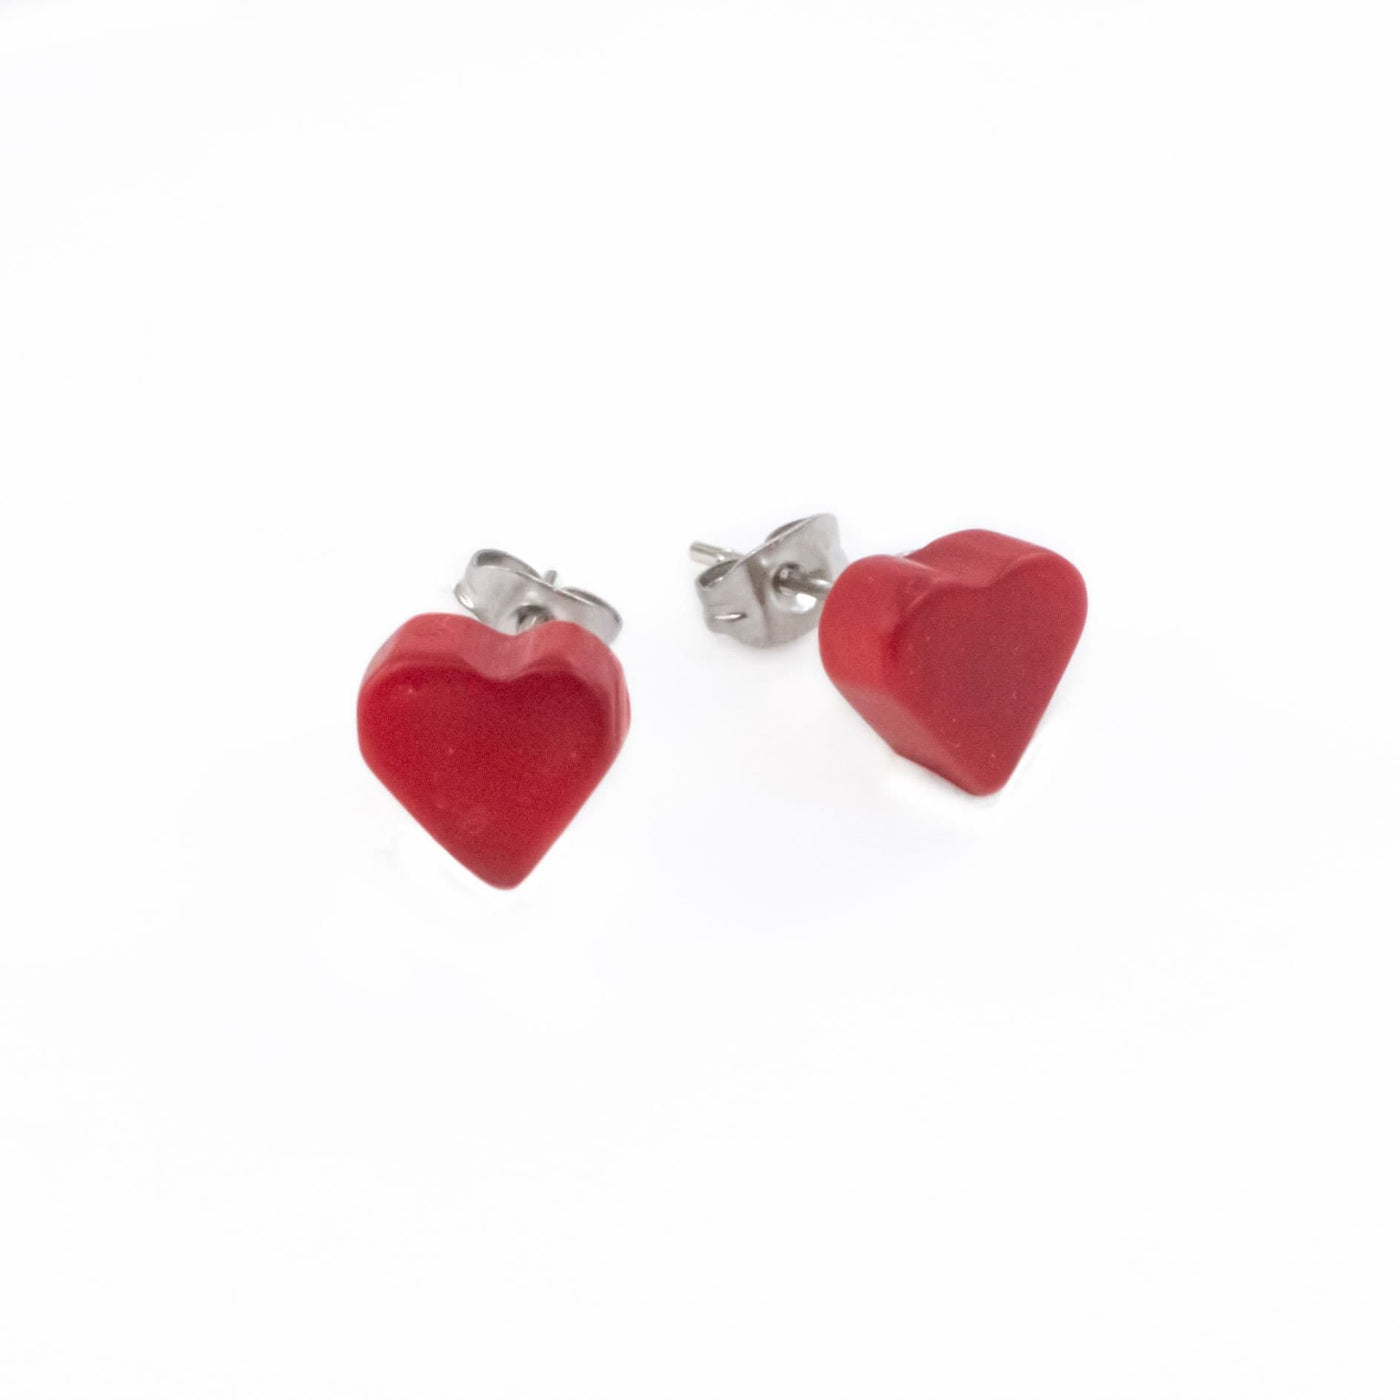 Tagua Heart Earrings - Red